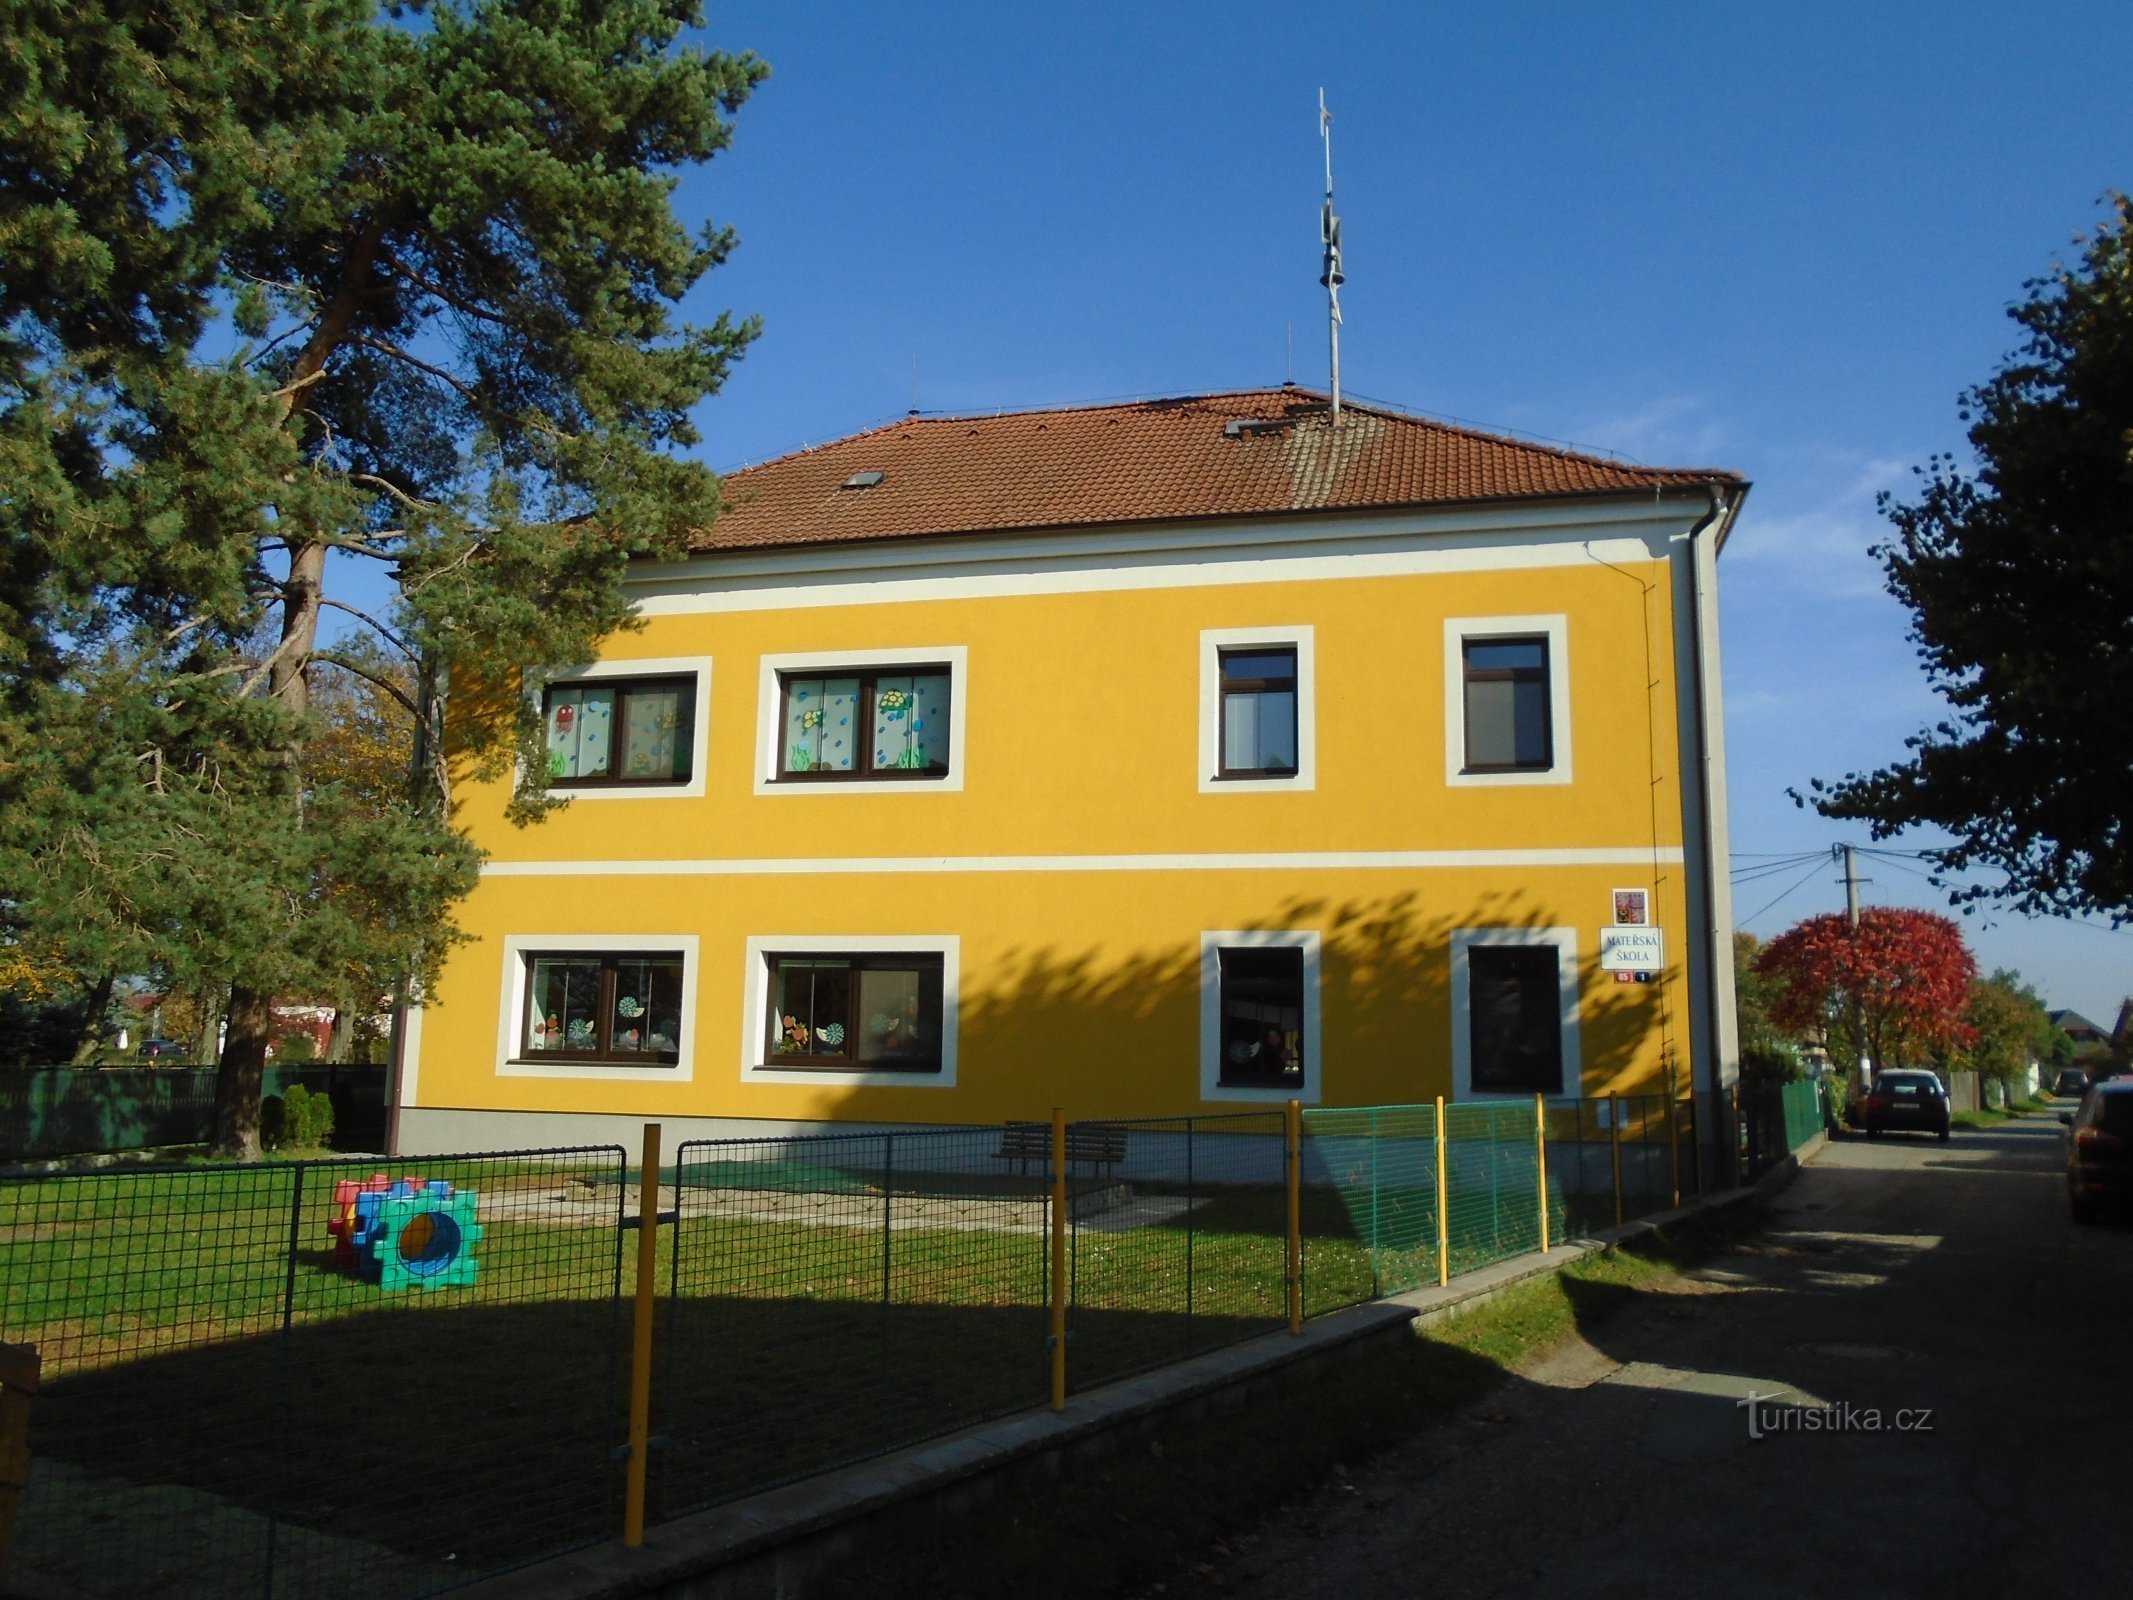 Trường mẫu giáo ở Slatina sau khi tái thiết (Hradec Králové)